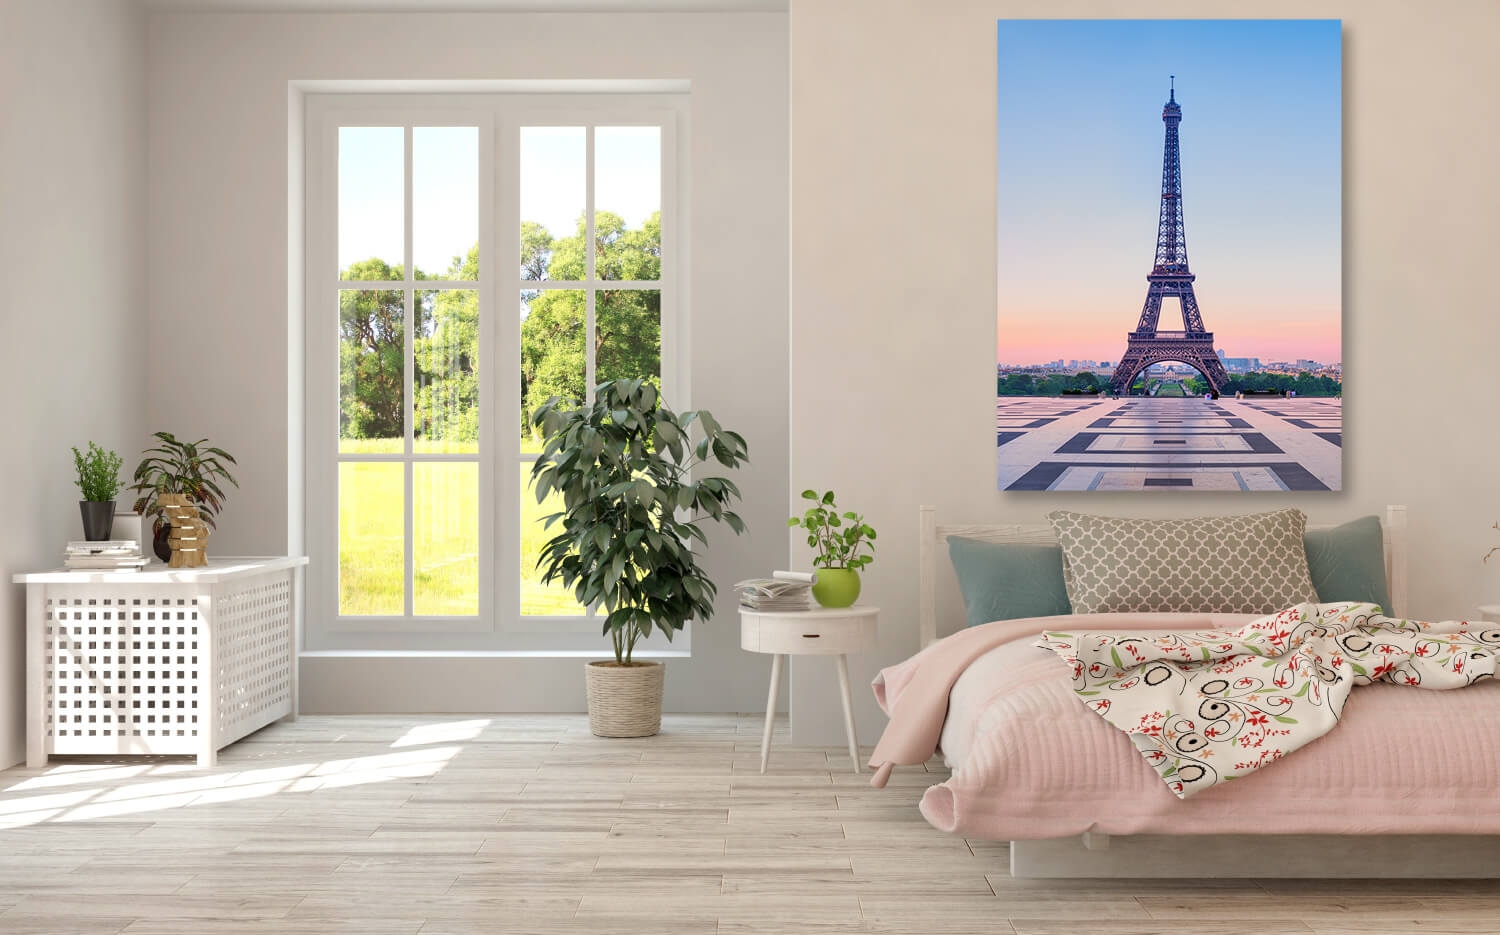 40cm x 30 Grösse Morgen Leinwand Eiffelturm (2:3) am Canvas Wandbild Paris Ausführung